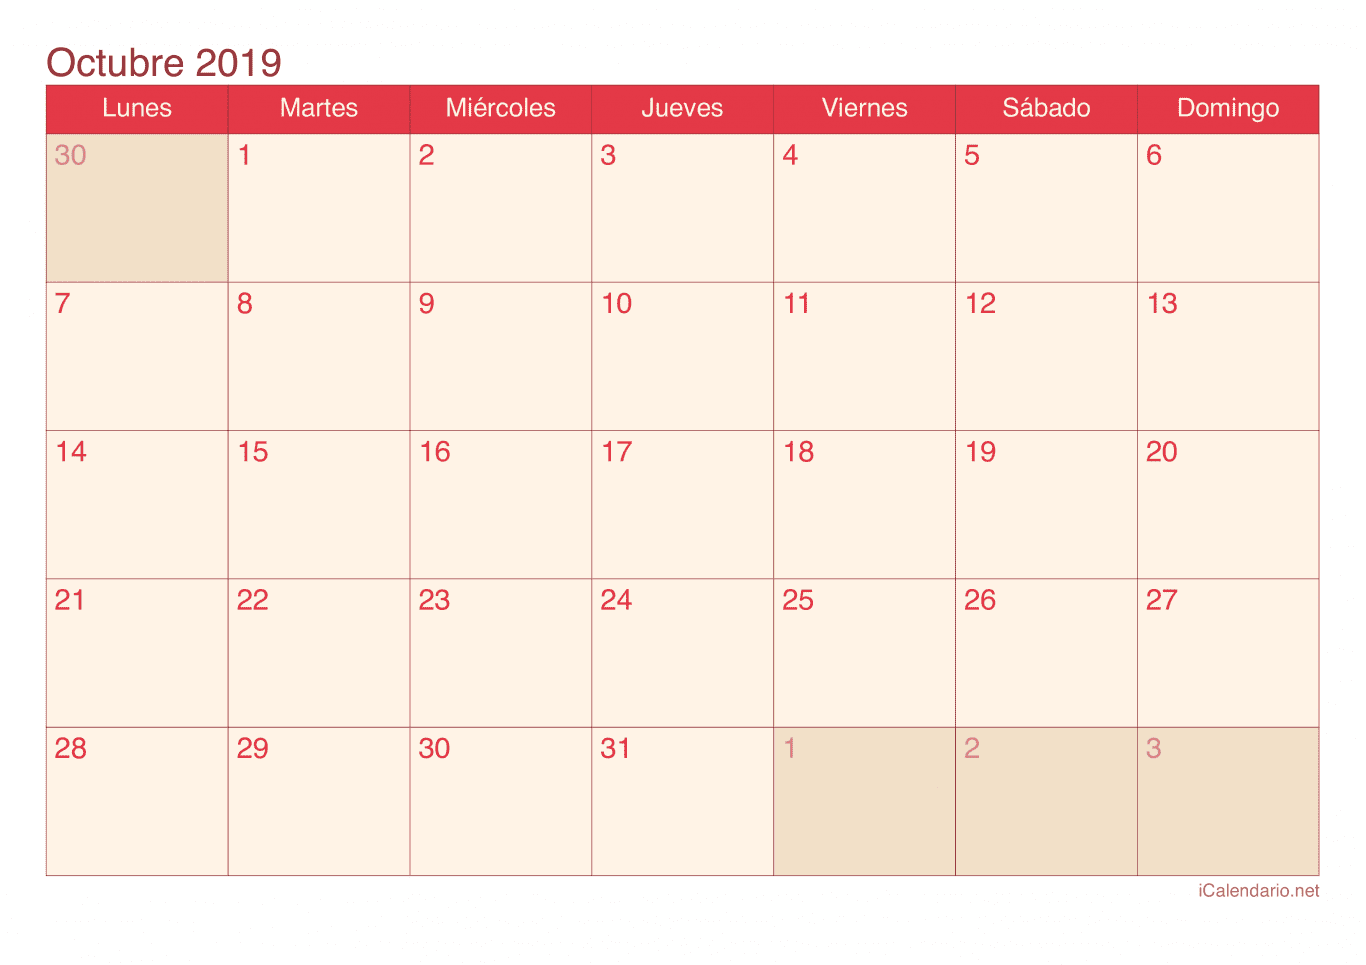 Calendario de octubre 2019 - Cherry